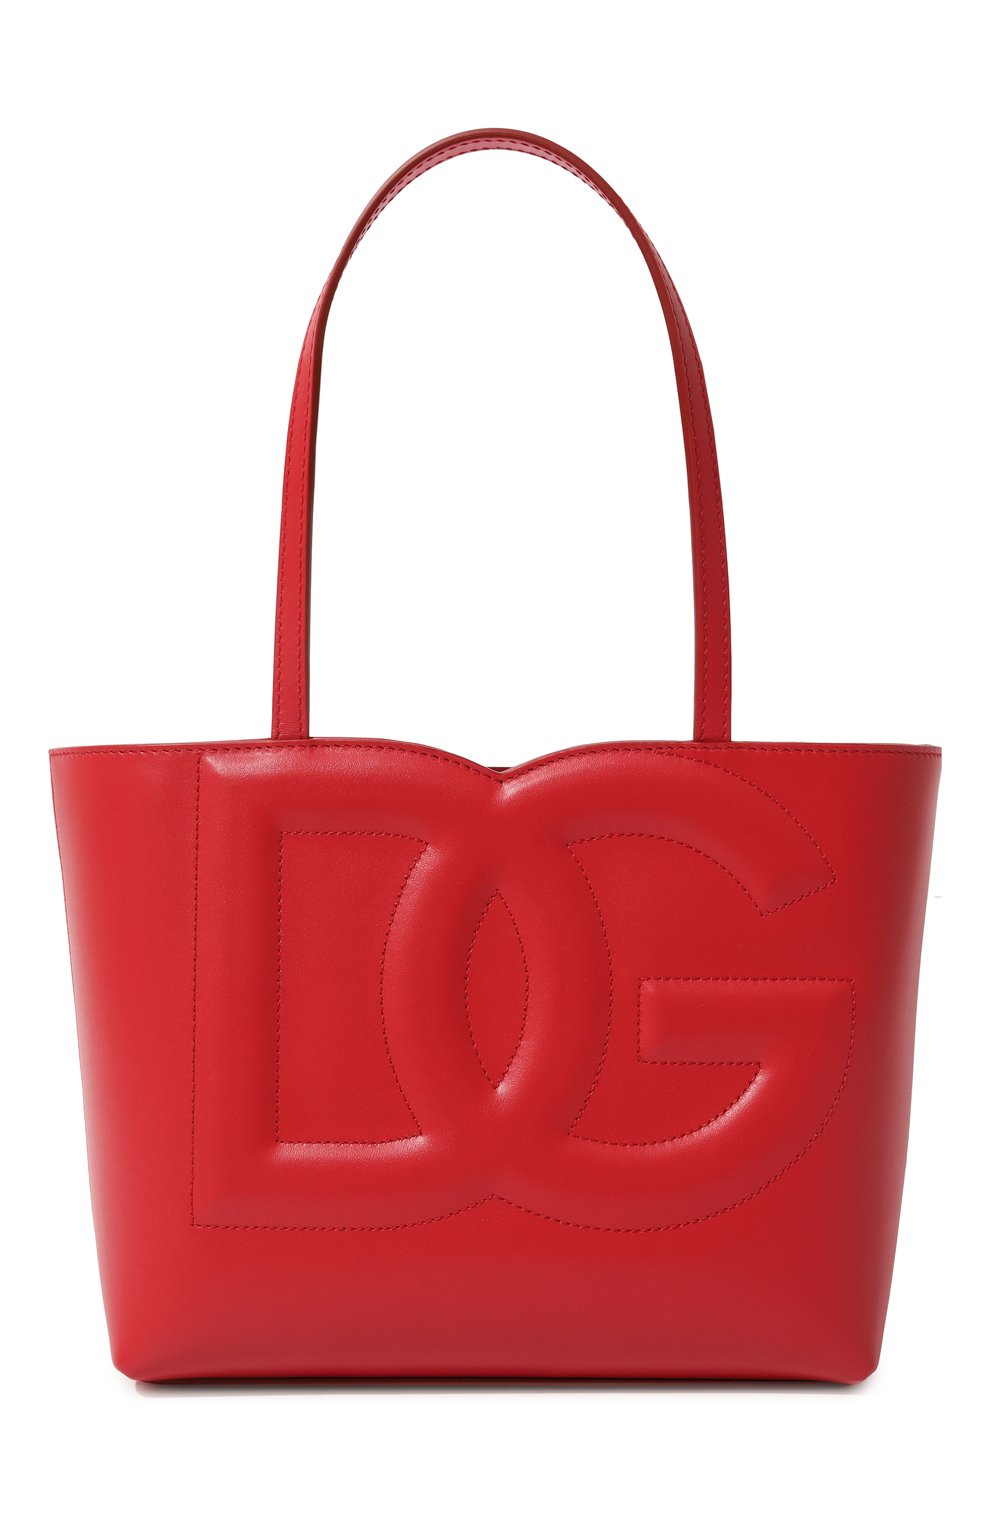 Шоперы Dolce & Gabbana, Сумка-тоут DG Logo medium Dolce & Gabbana, Италия, Красный, Кожа: 100%;, 12942411  - купить